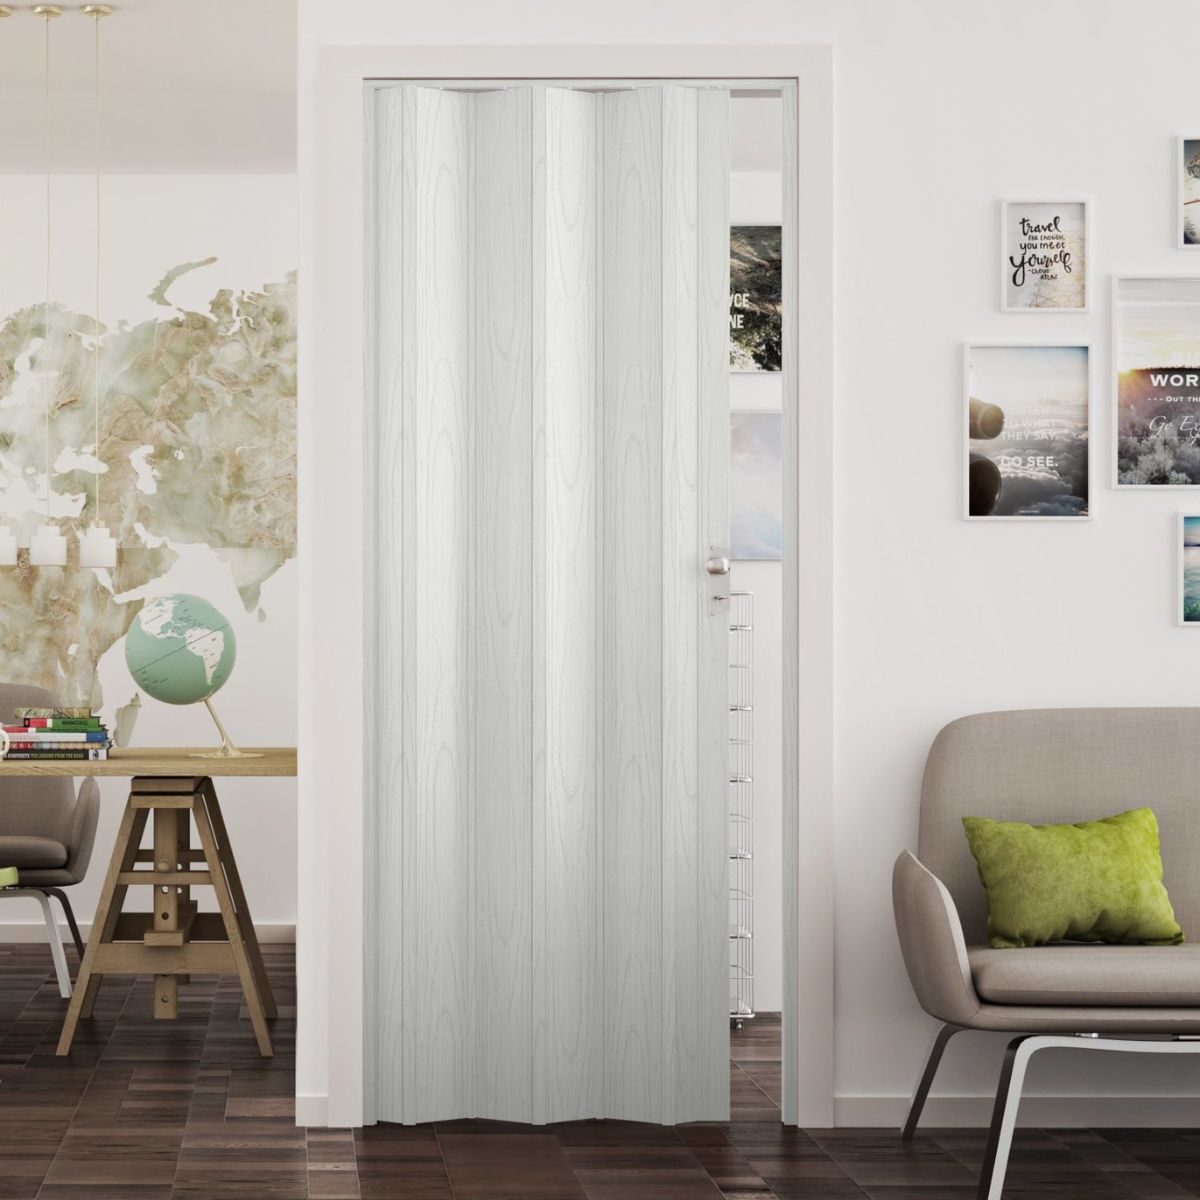 Fortesrl Luciana vouwdeur zonder glas in kleur wit essen BxH 88.5x214 cm